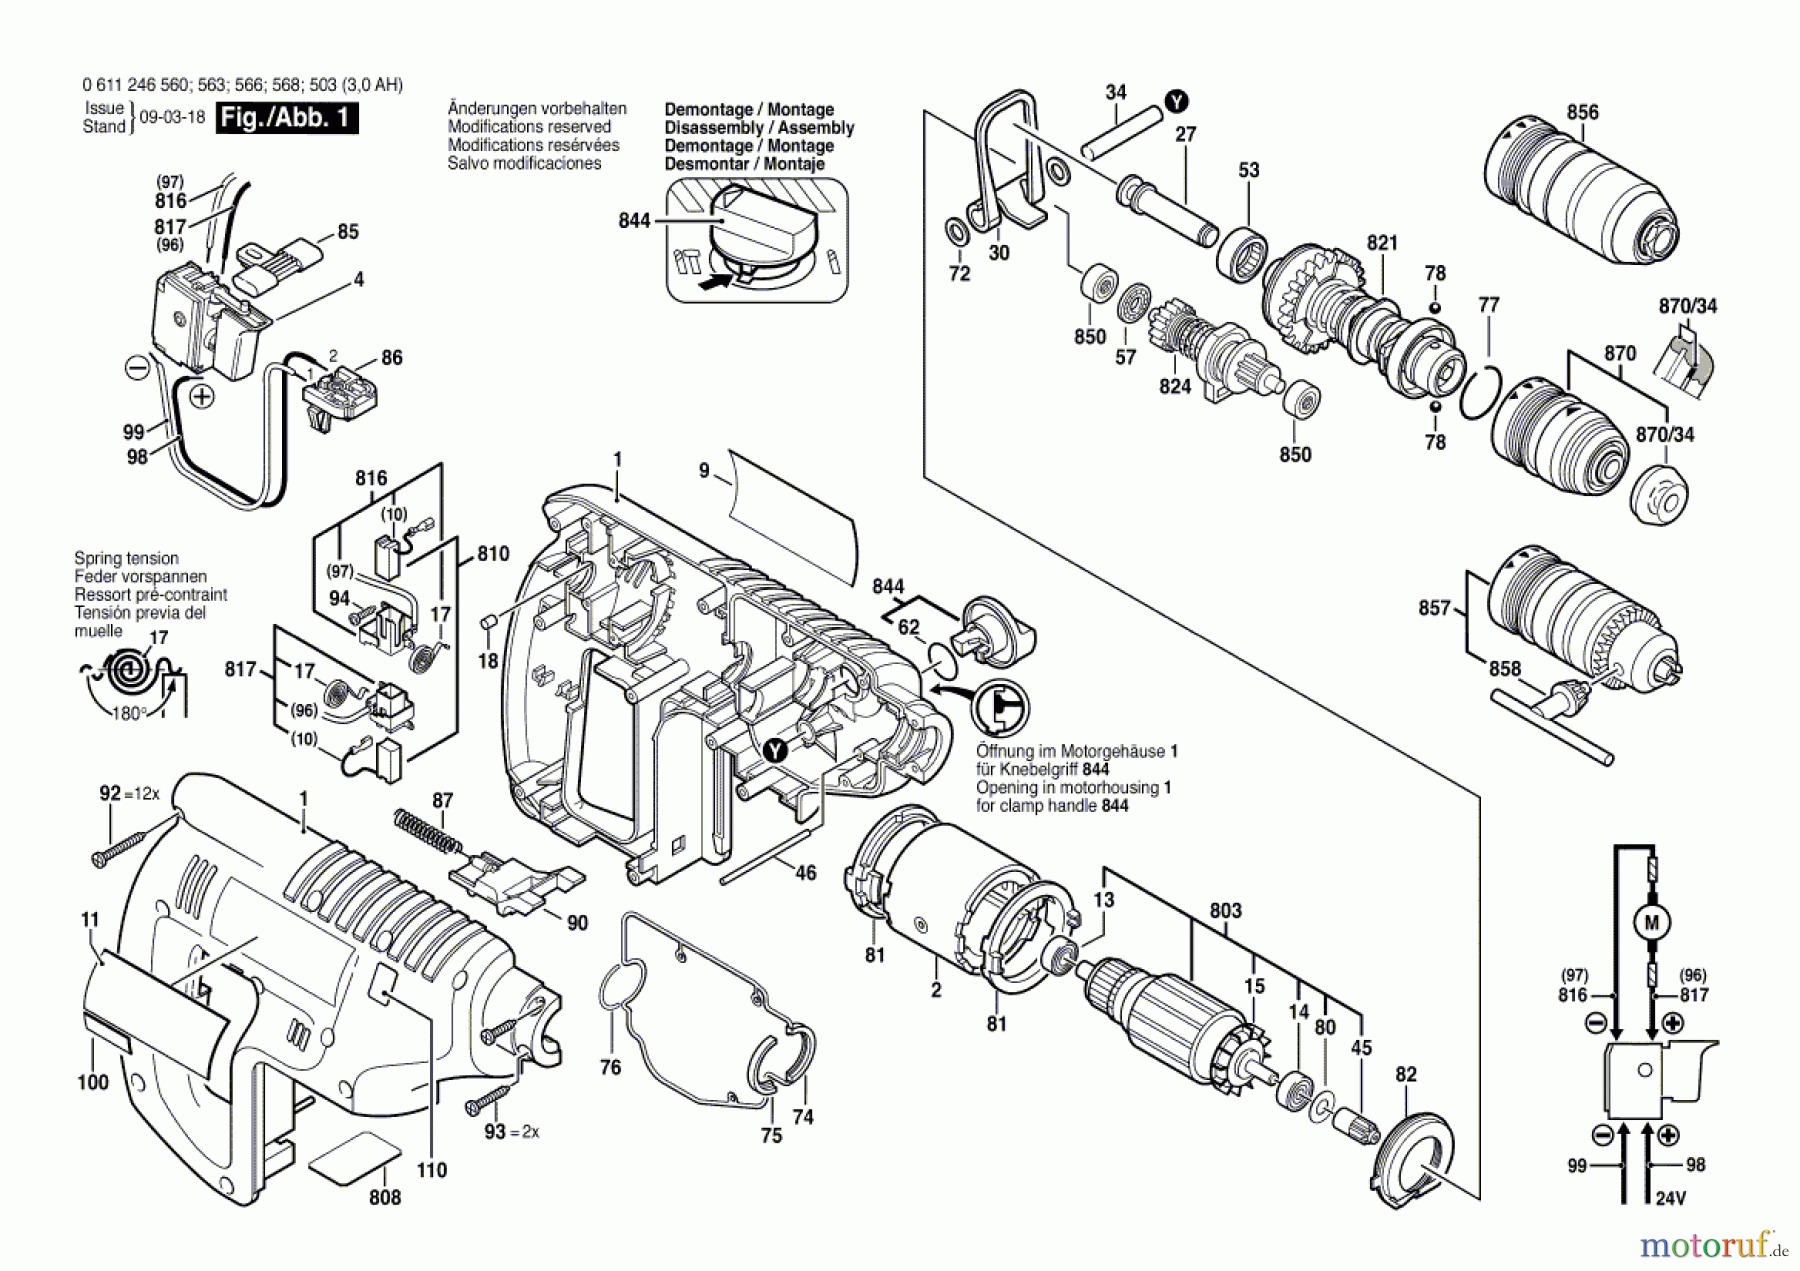  Bosch Akku Werkzeug Gw-Akku-Bohrhammer GBH 24 VFR Seite 1